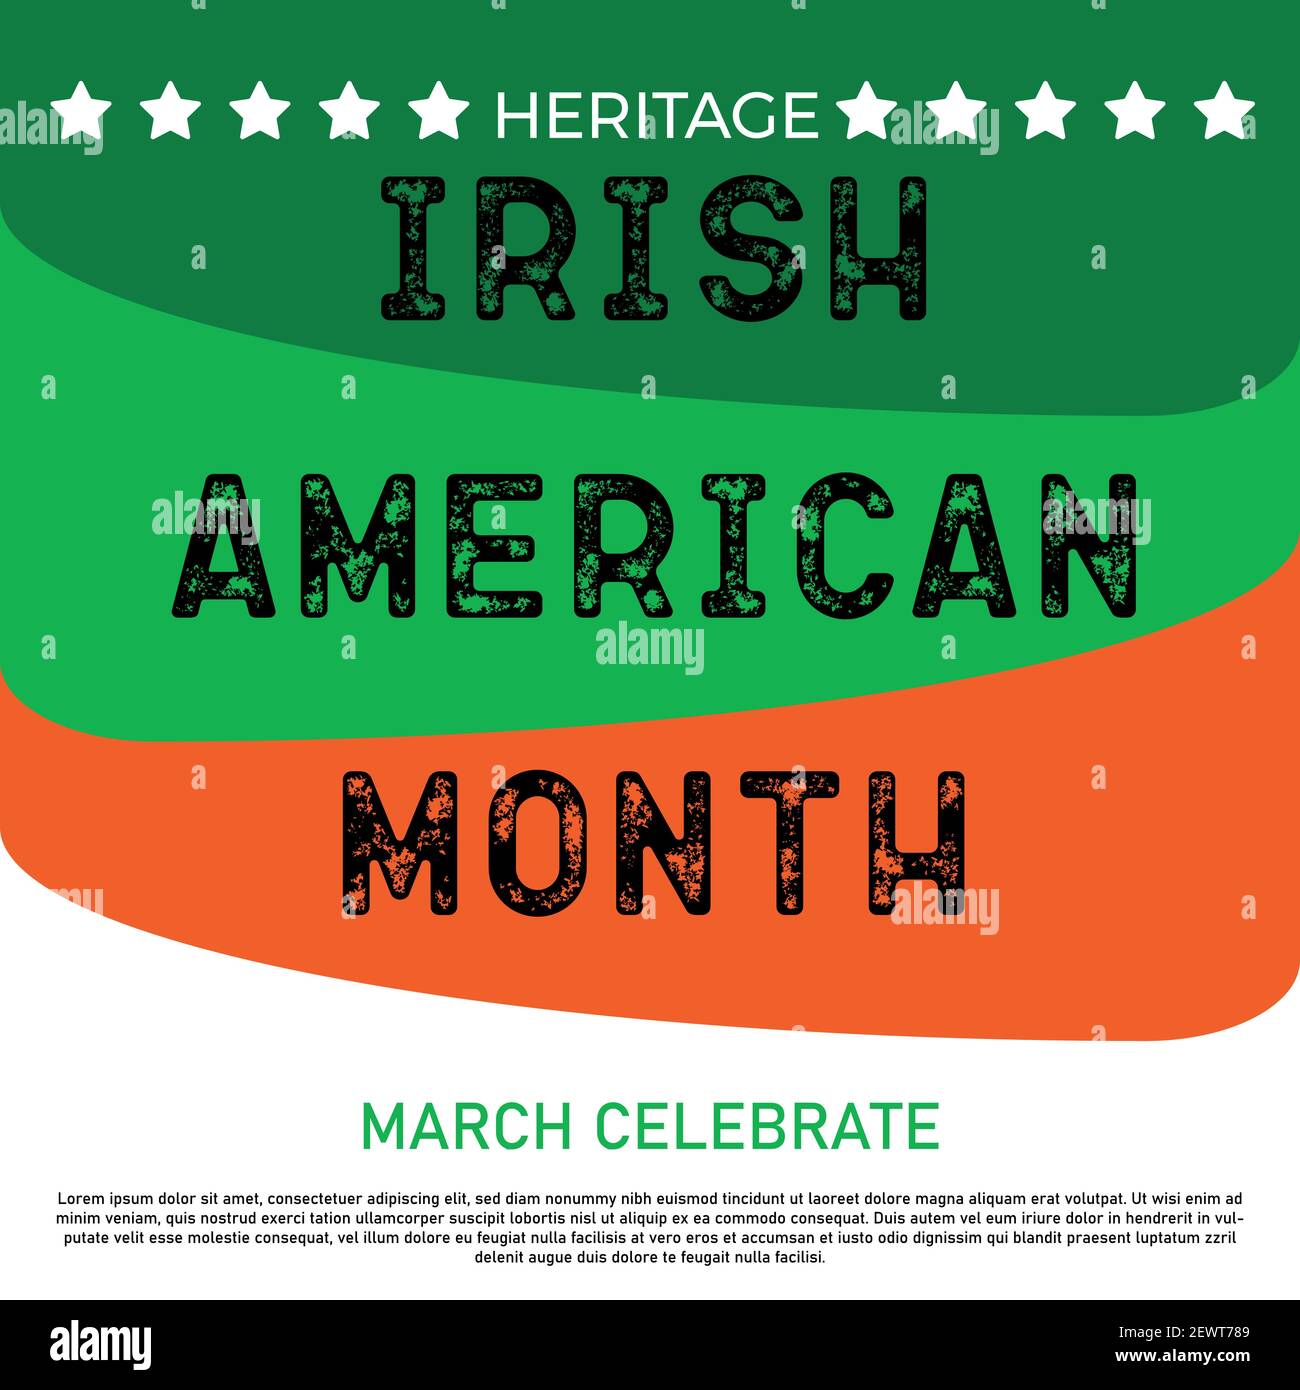 Mois du patrimoine irlandais-américain. Annuel célébré tout au mois de mars aux États-Unis pour honorer les réalisations et les contributions des immigrants irlandais à la Illustration de Vecteur